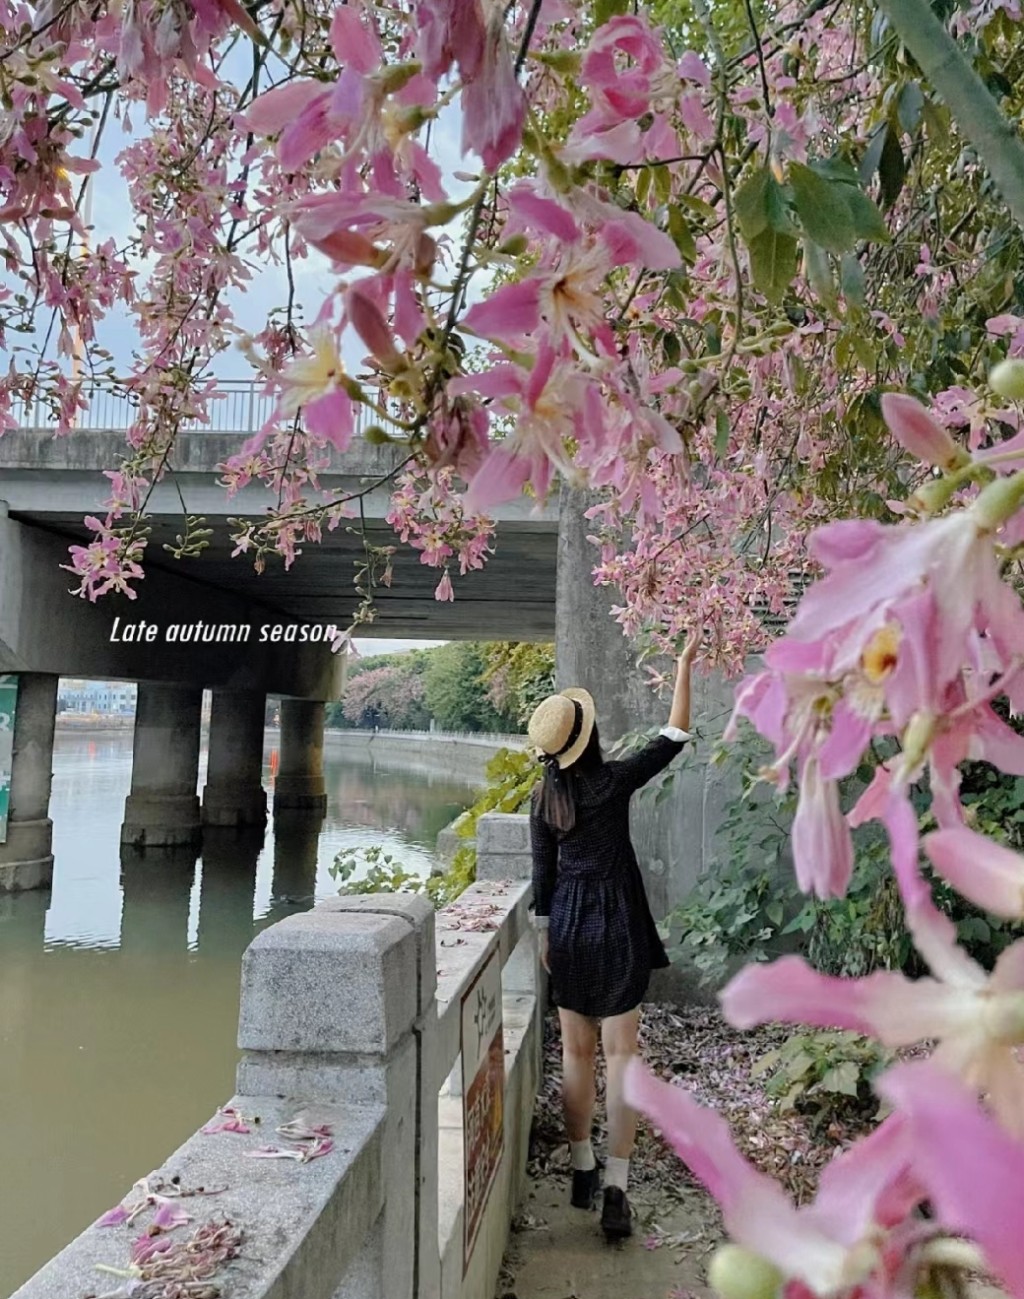 廣州上步河畔異木棉正盛開。(圖片來源：小紅書@黃小檬)